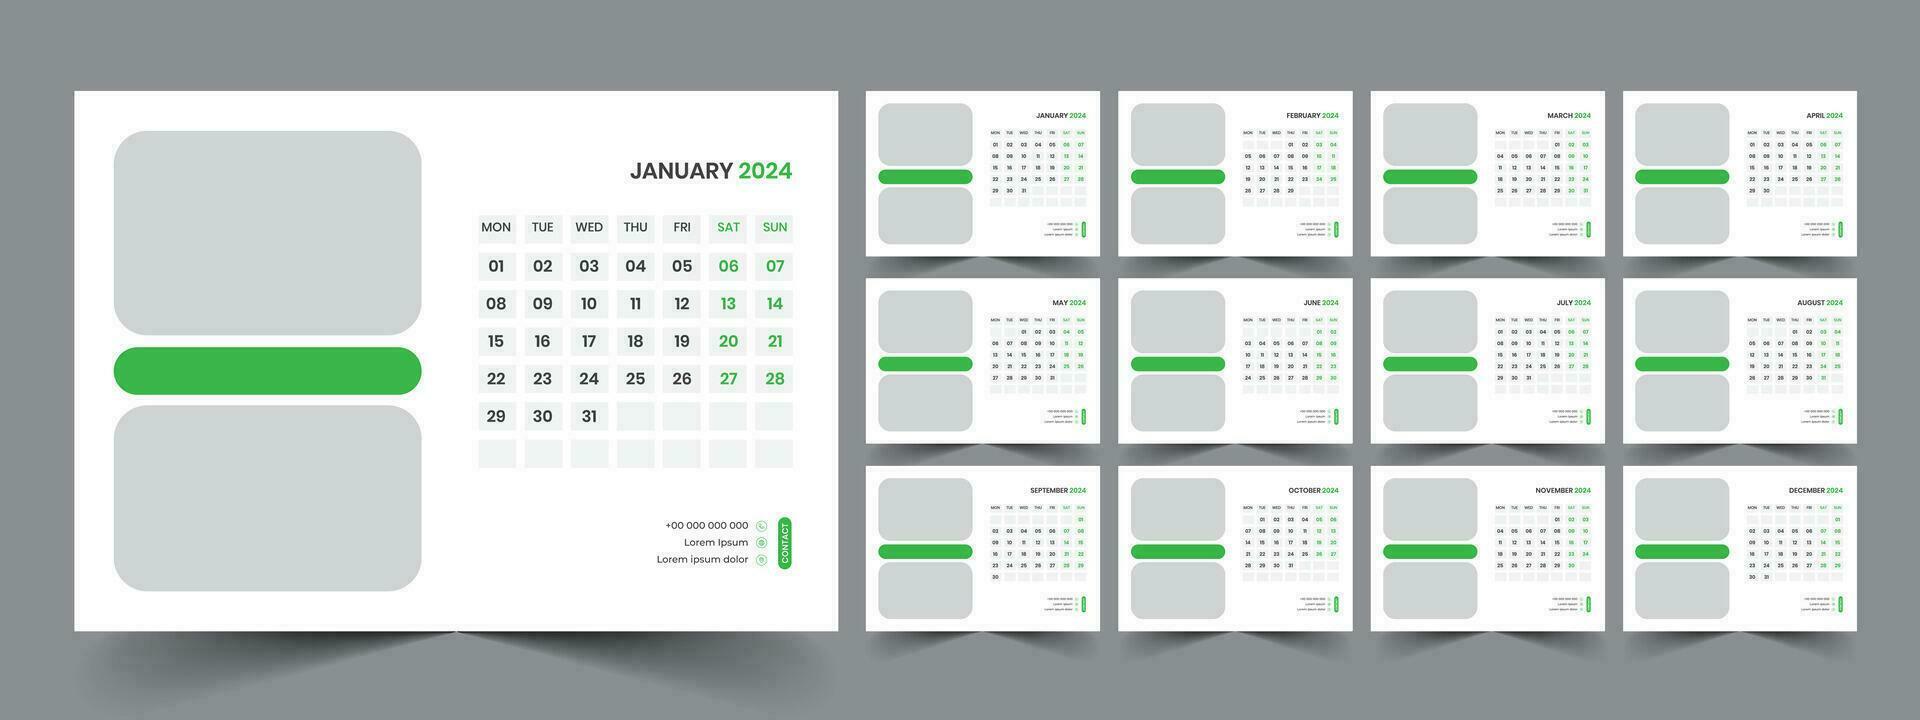 calendario 2024 planificador corporativo modelo diseño colocar. semana empieza en lunes. modelo para anual calendario 2024 vector